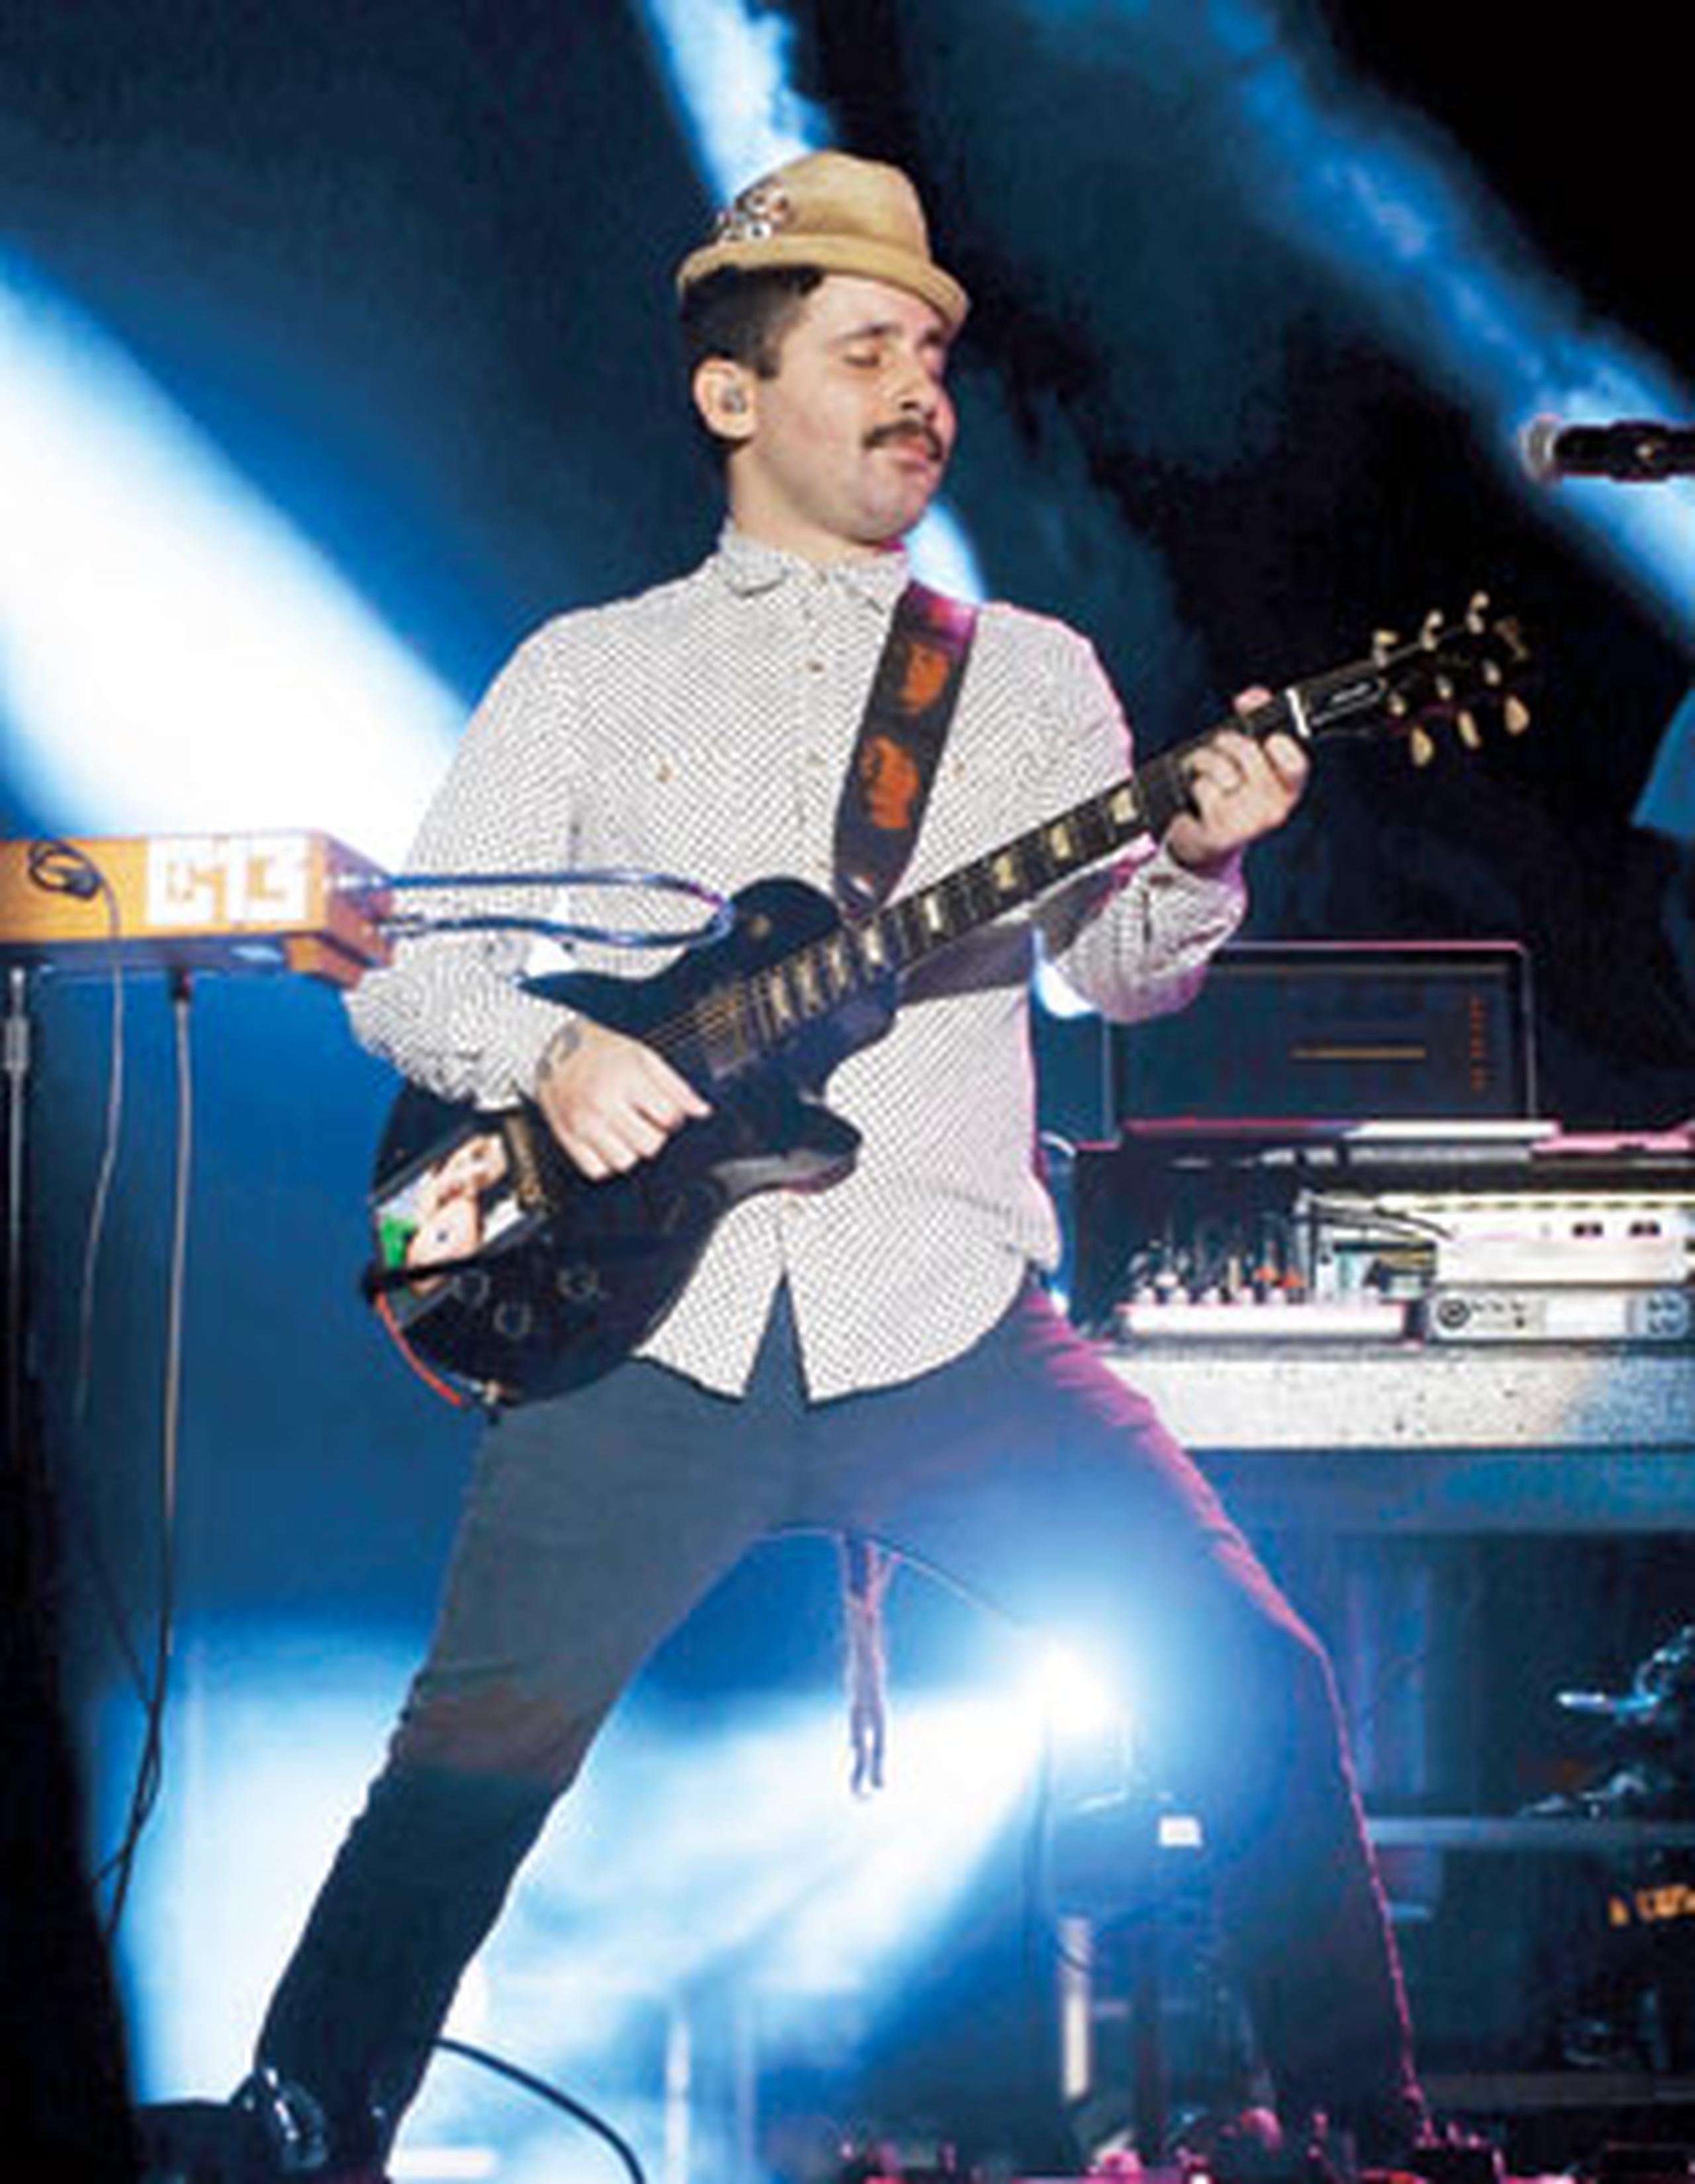 El productor Eduardo Cabra fue nominado por su trabajo en el álbum “Caja de música”, de la banda colombiana Monsieur Periné. (Archivo)